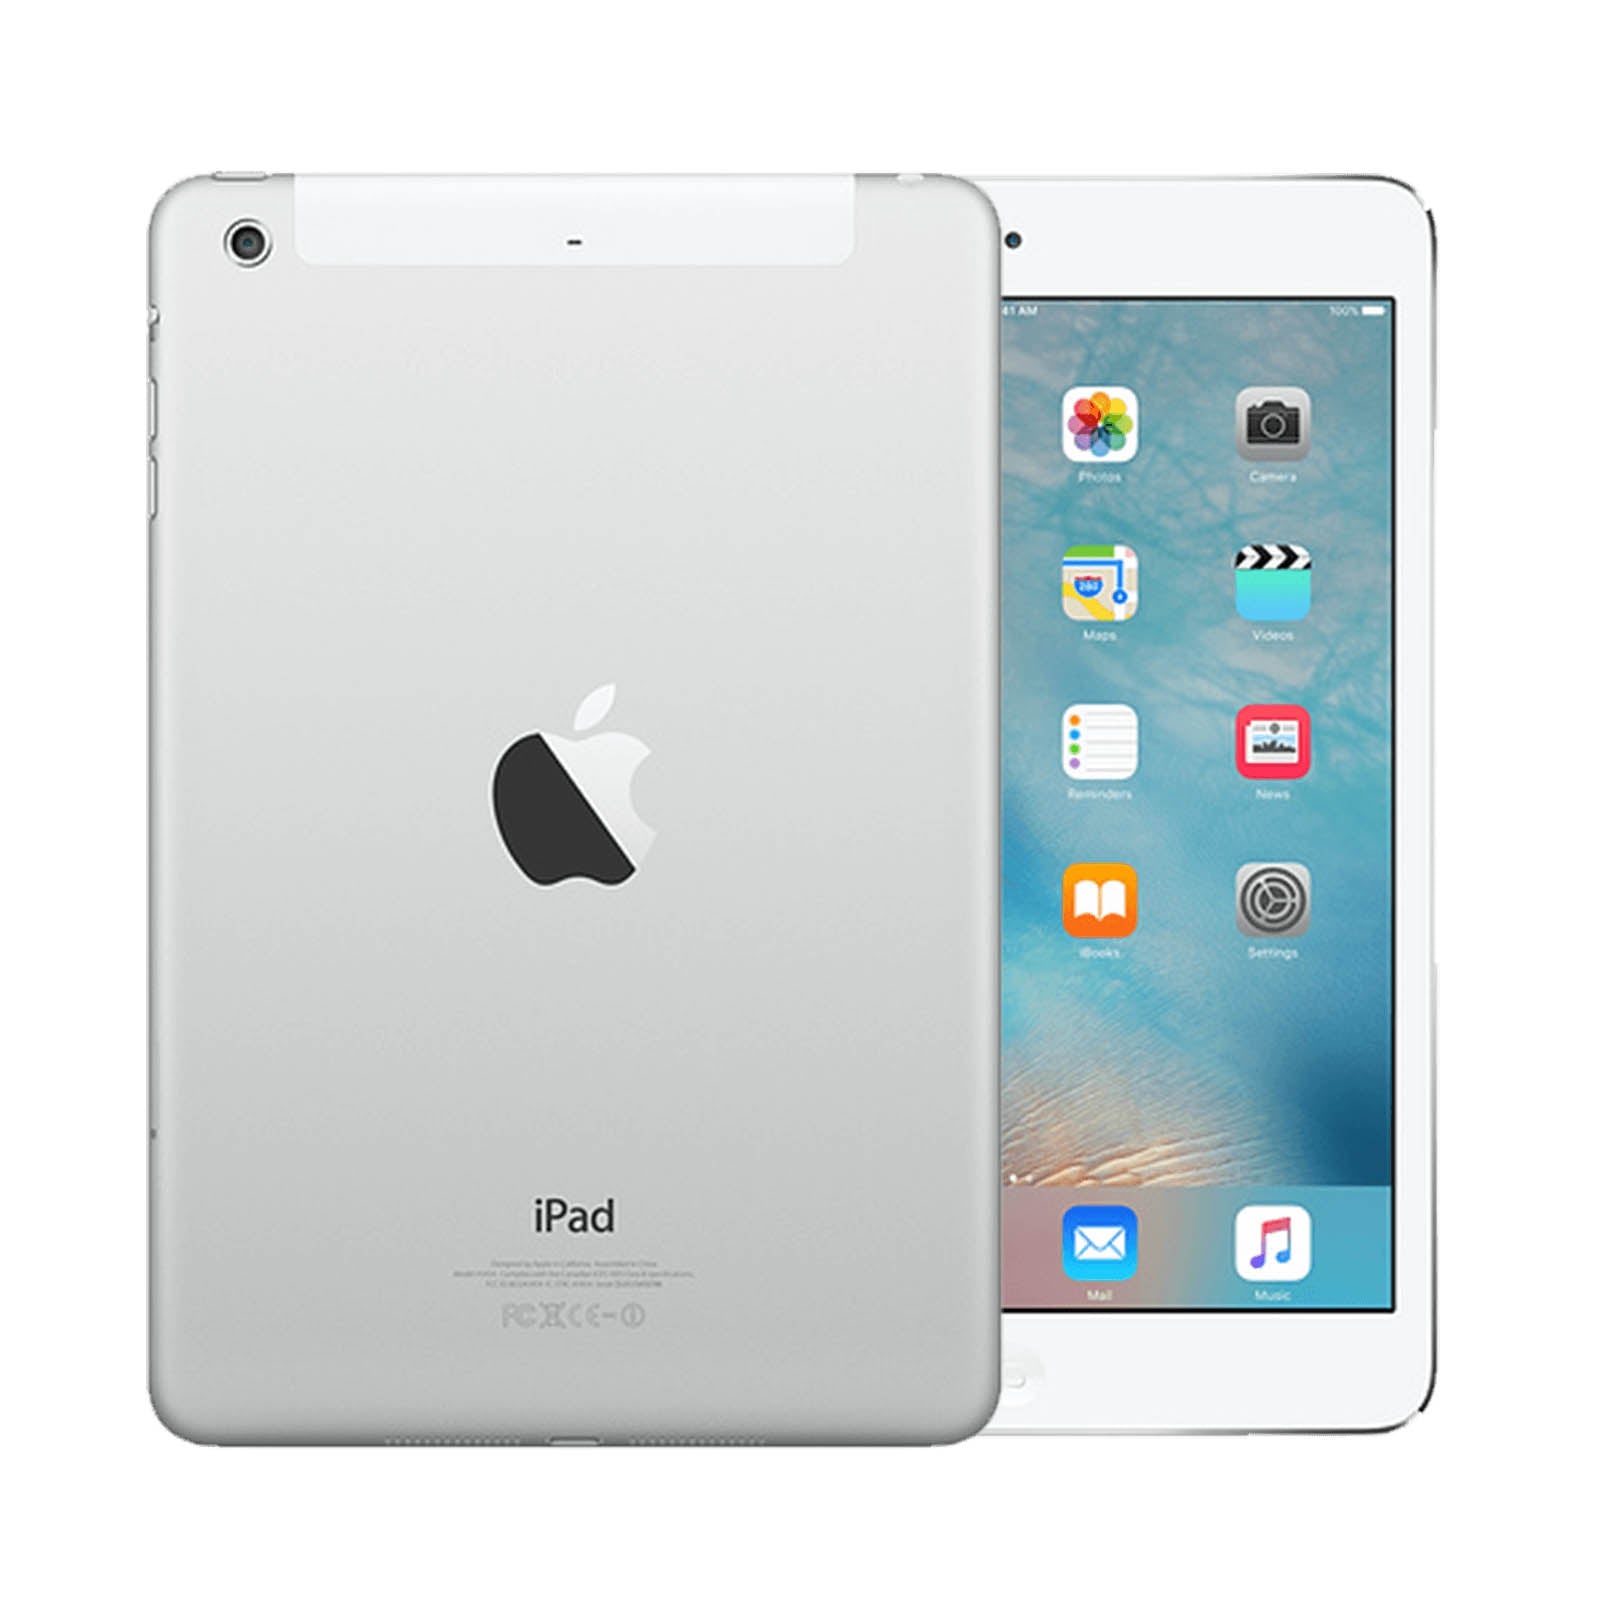 Apple iPad mini 2 64GB White Pristine - Unlocked